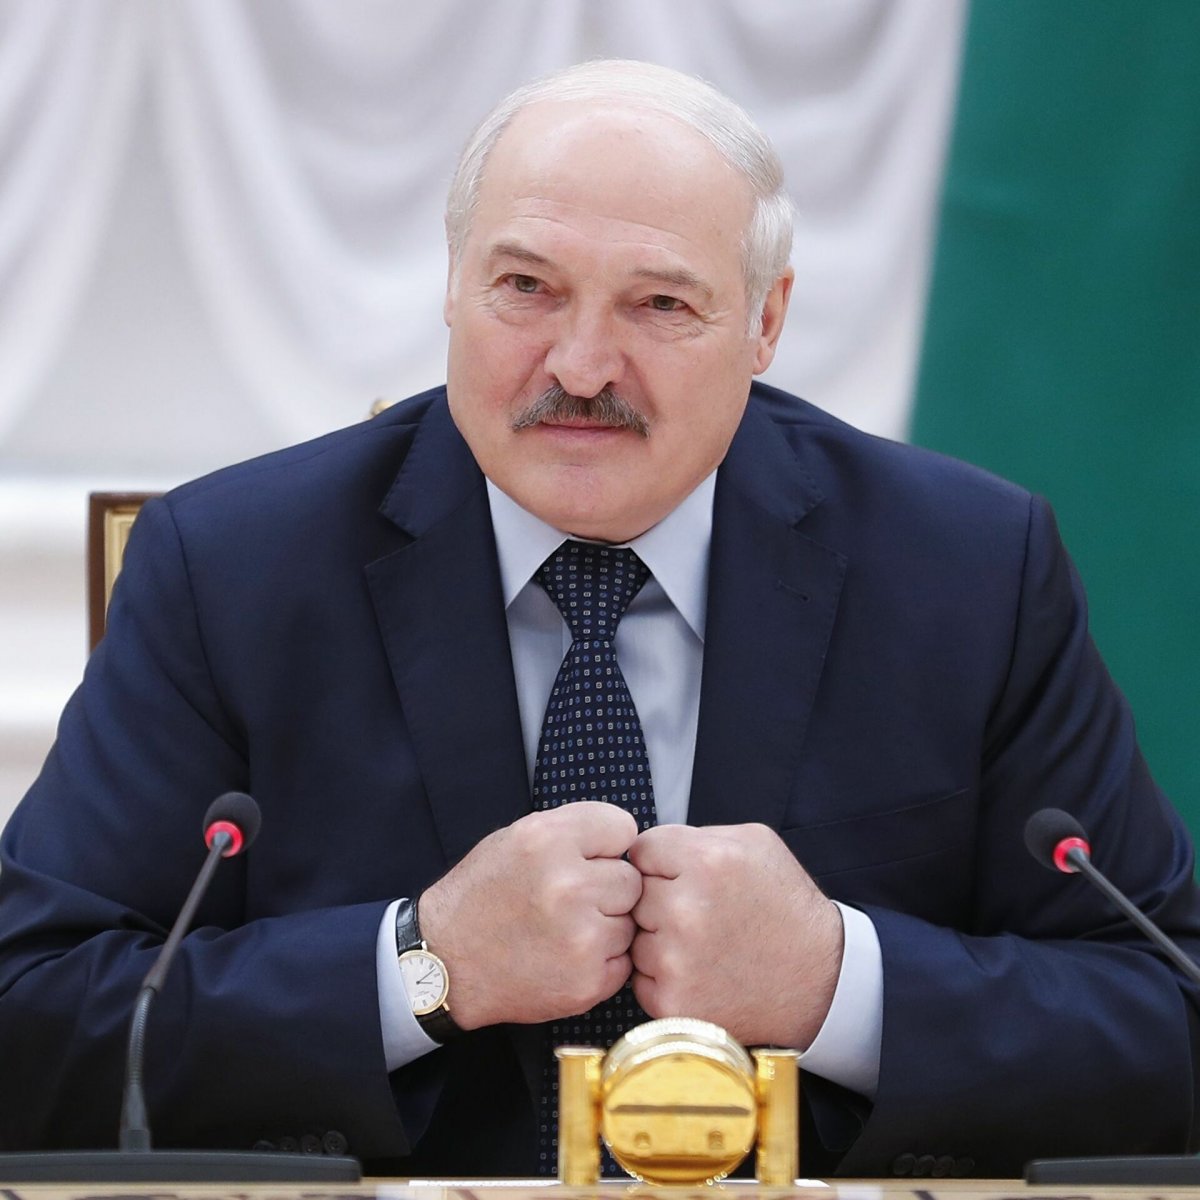 Avustralya, Belarus Cumhurbaşkanı Lukaşenko yu yaptırım listesine aldı #1